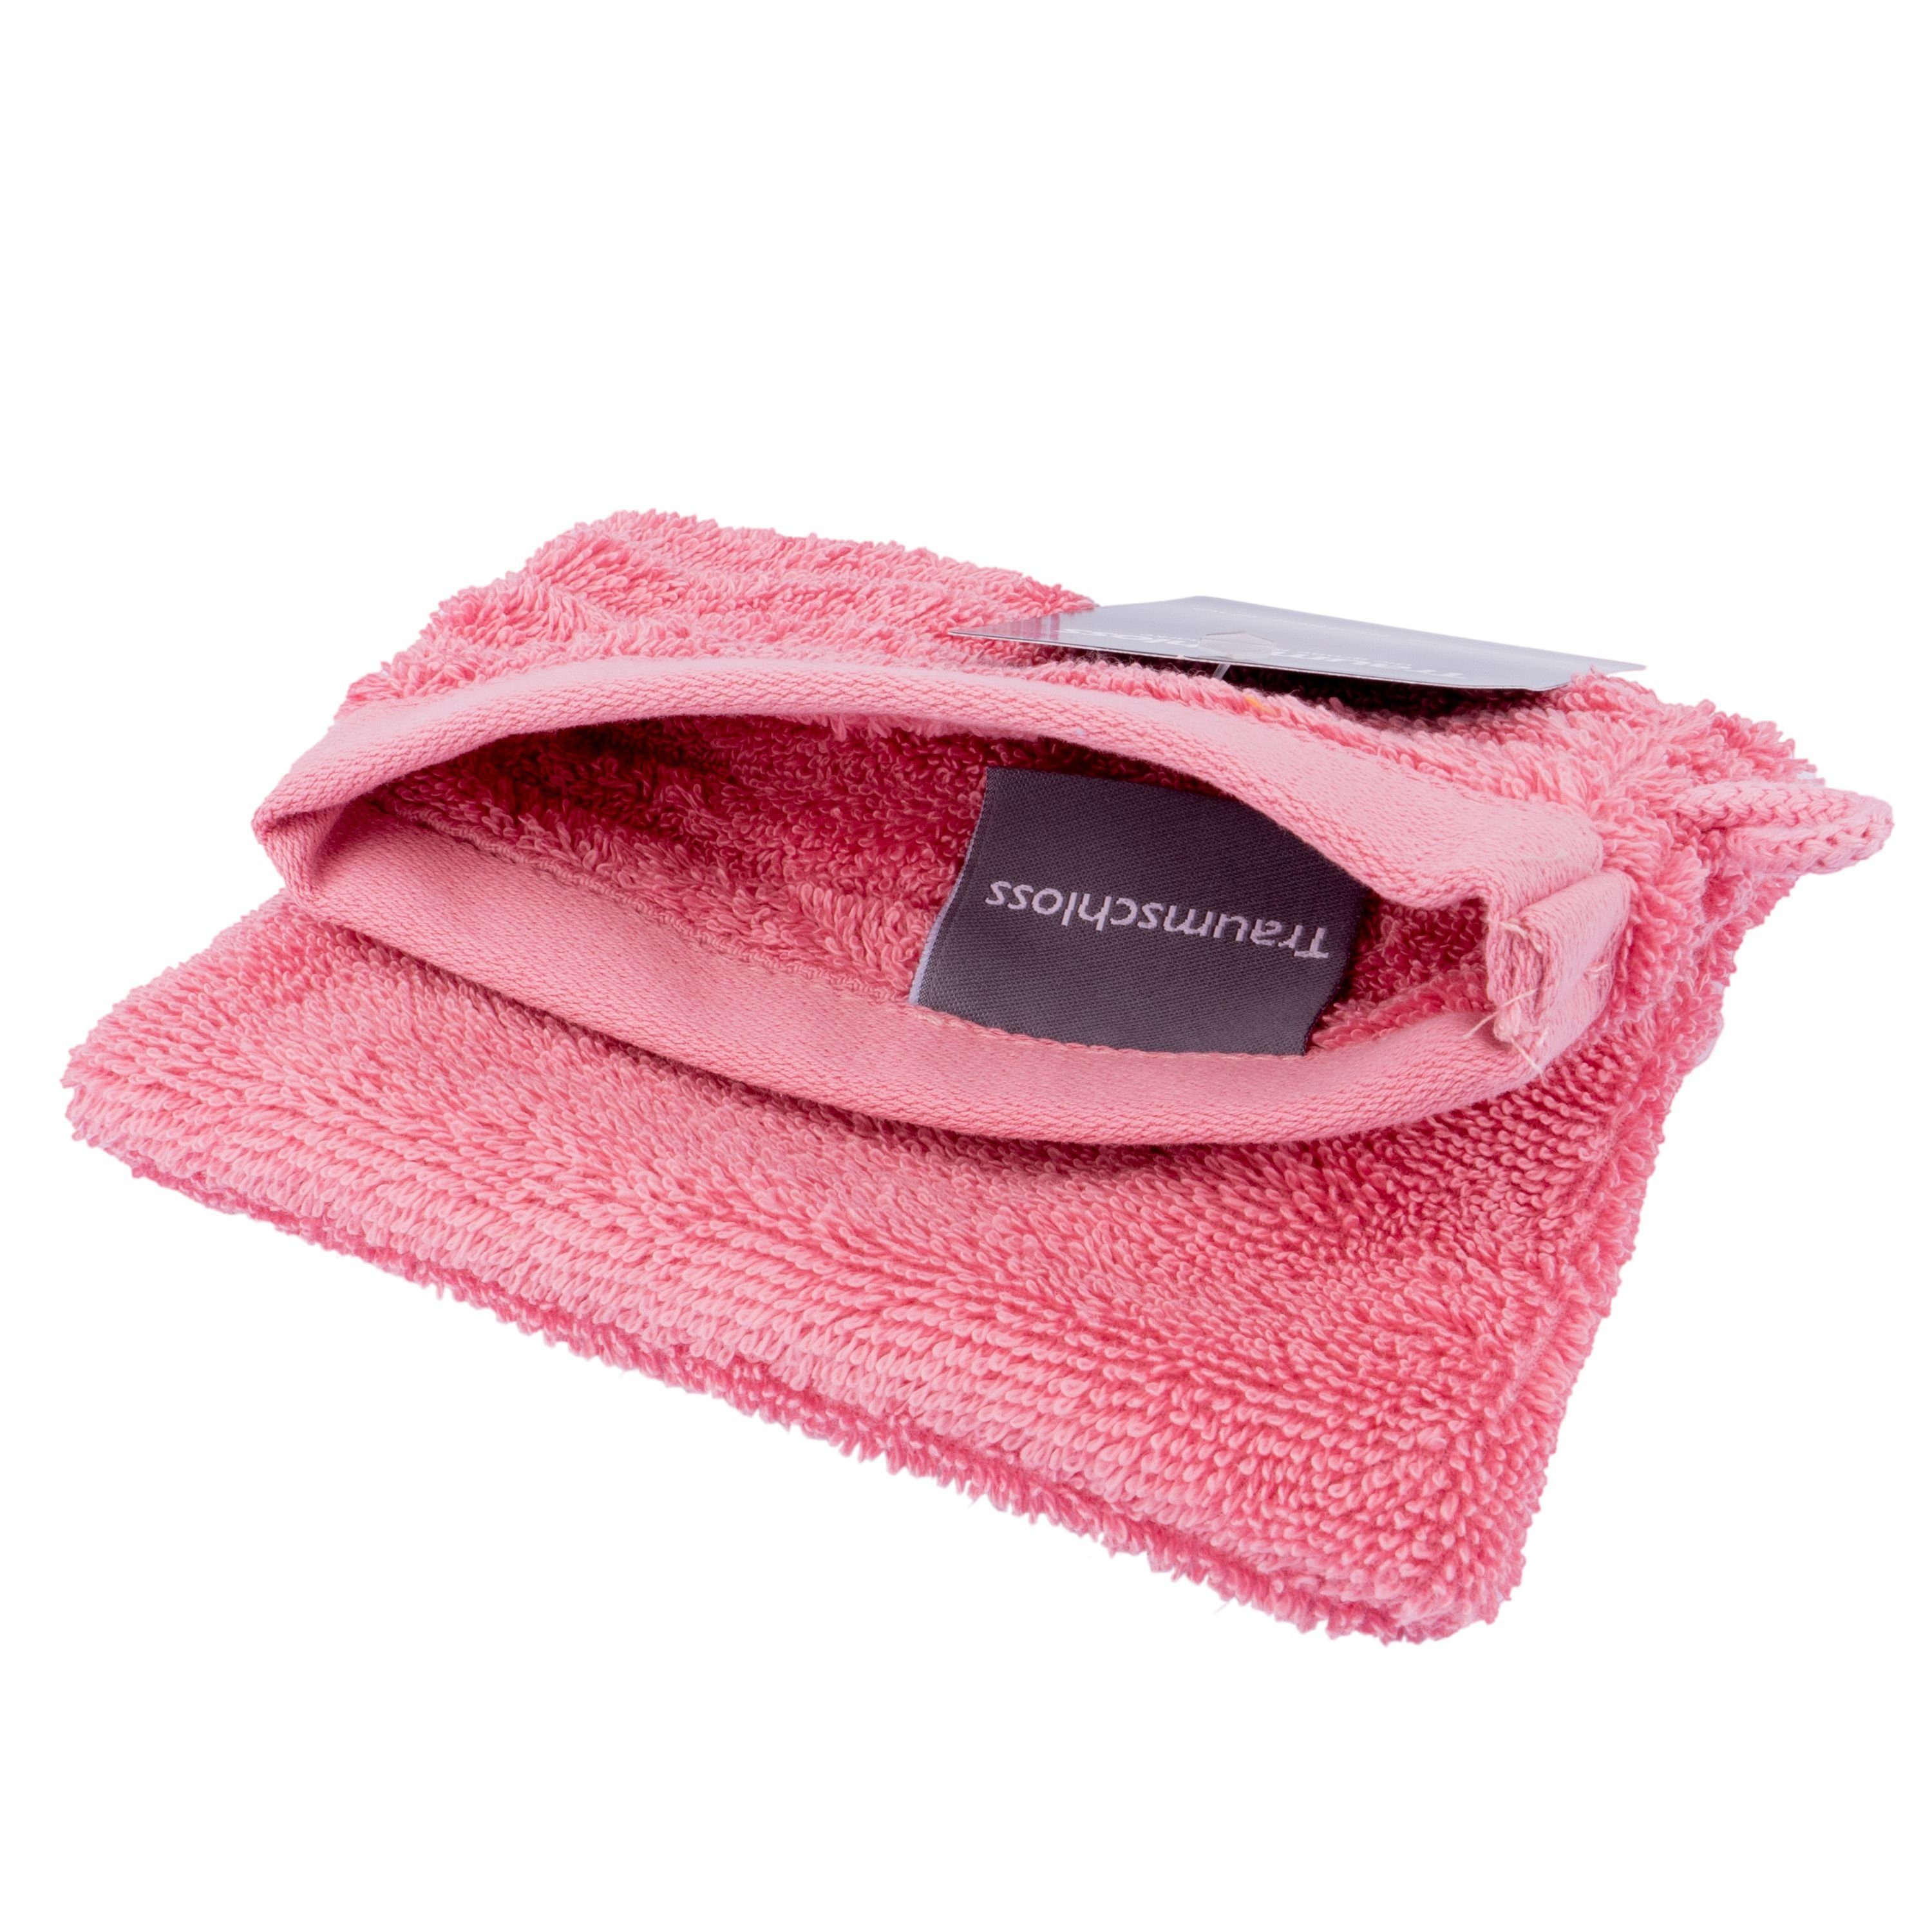 Traumschloss Waschlappen Premium-Line (1-tlg), 100% amerikanische 600g/m² pink Baumwolle mit Supima